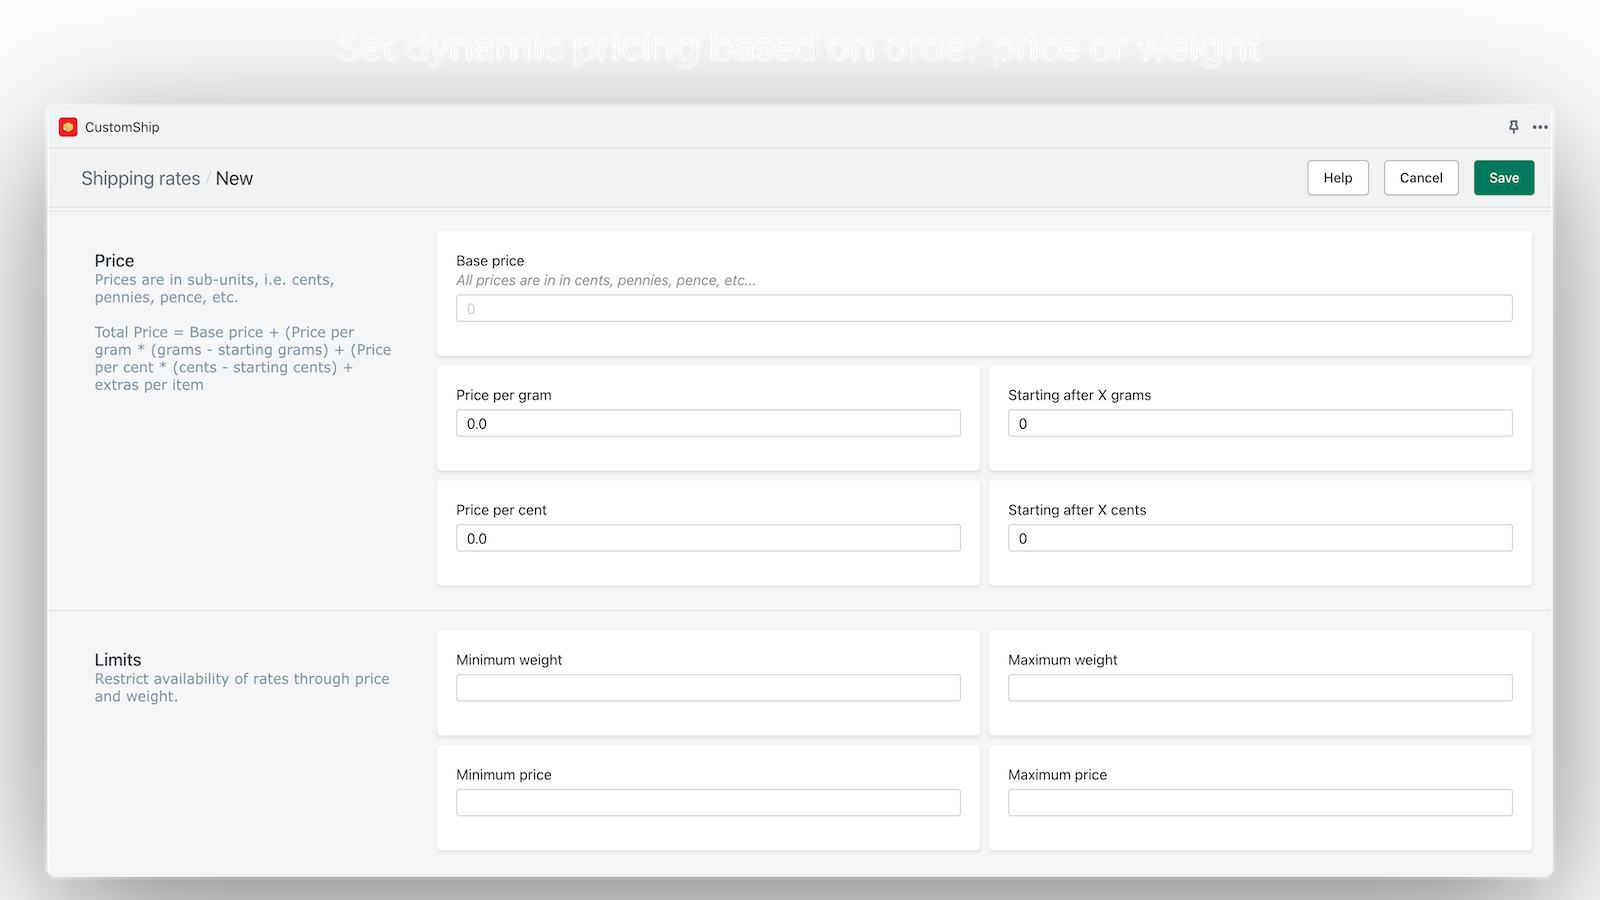 Tarifas dinámicas basadas en el precio o peso del pedido